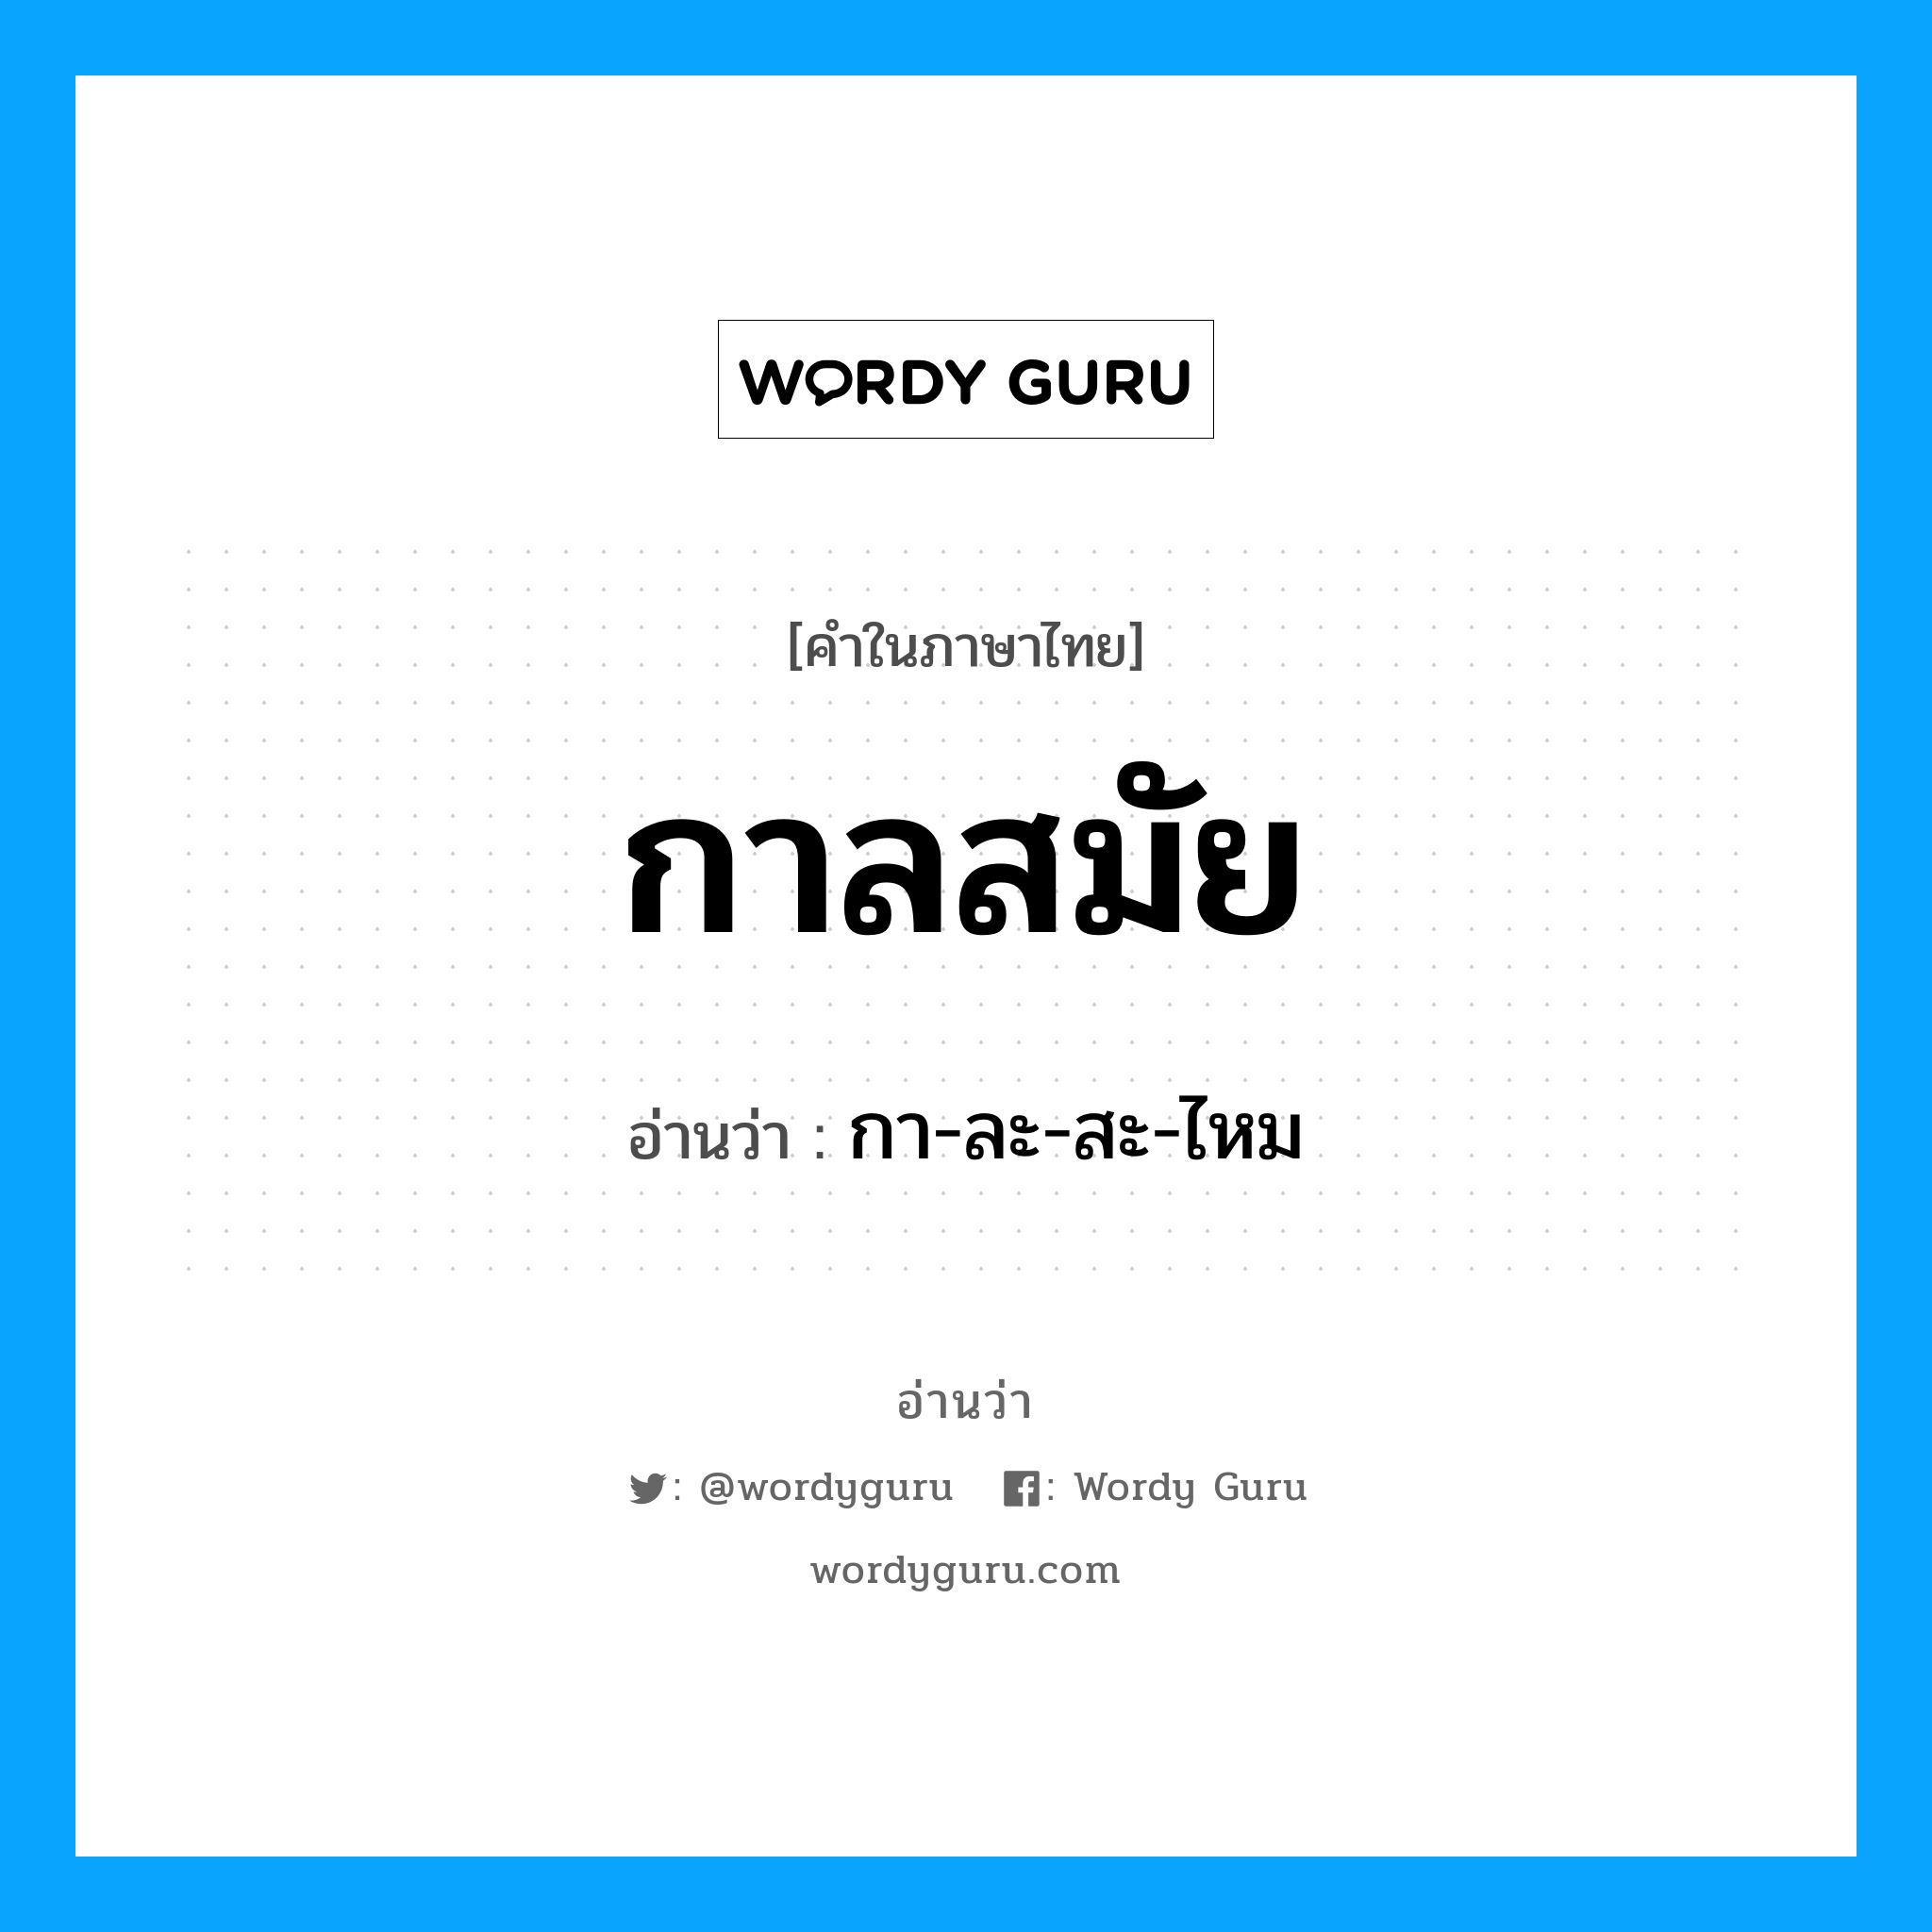 กา-ละ-สะ-ไหม เป็นคำอ่านของคำไหน?, คำในภาษาไทย กา-ละ-สะ-ไหม อ่านว่า กาลสมัย